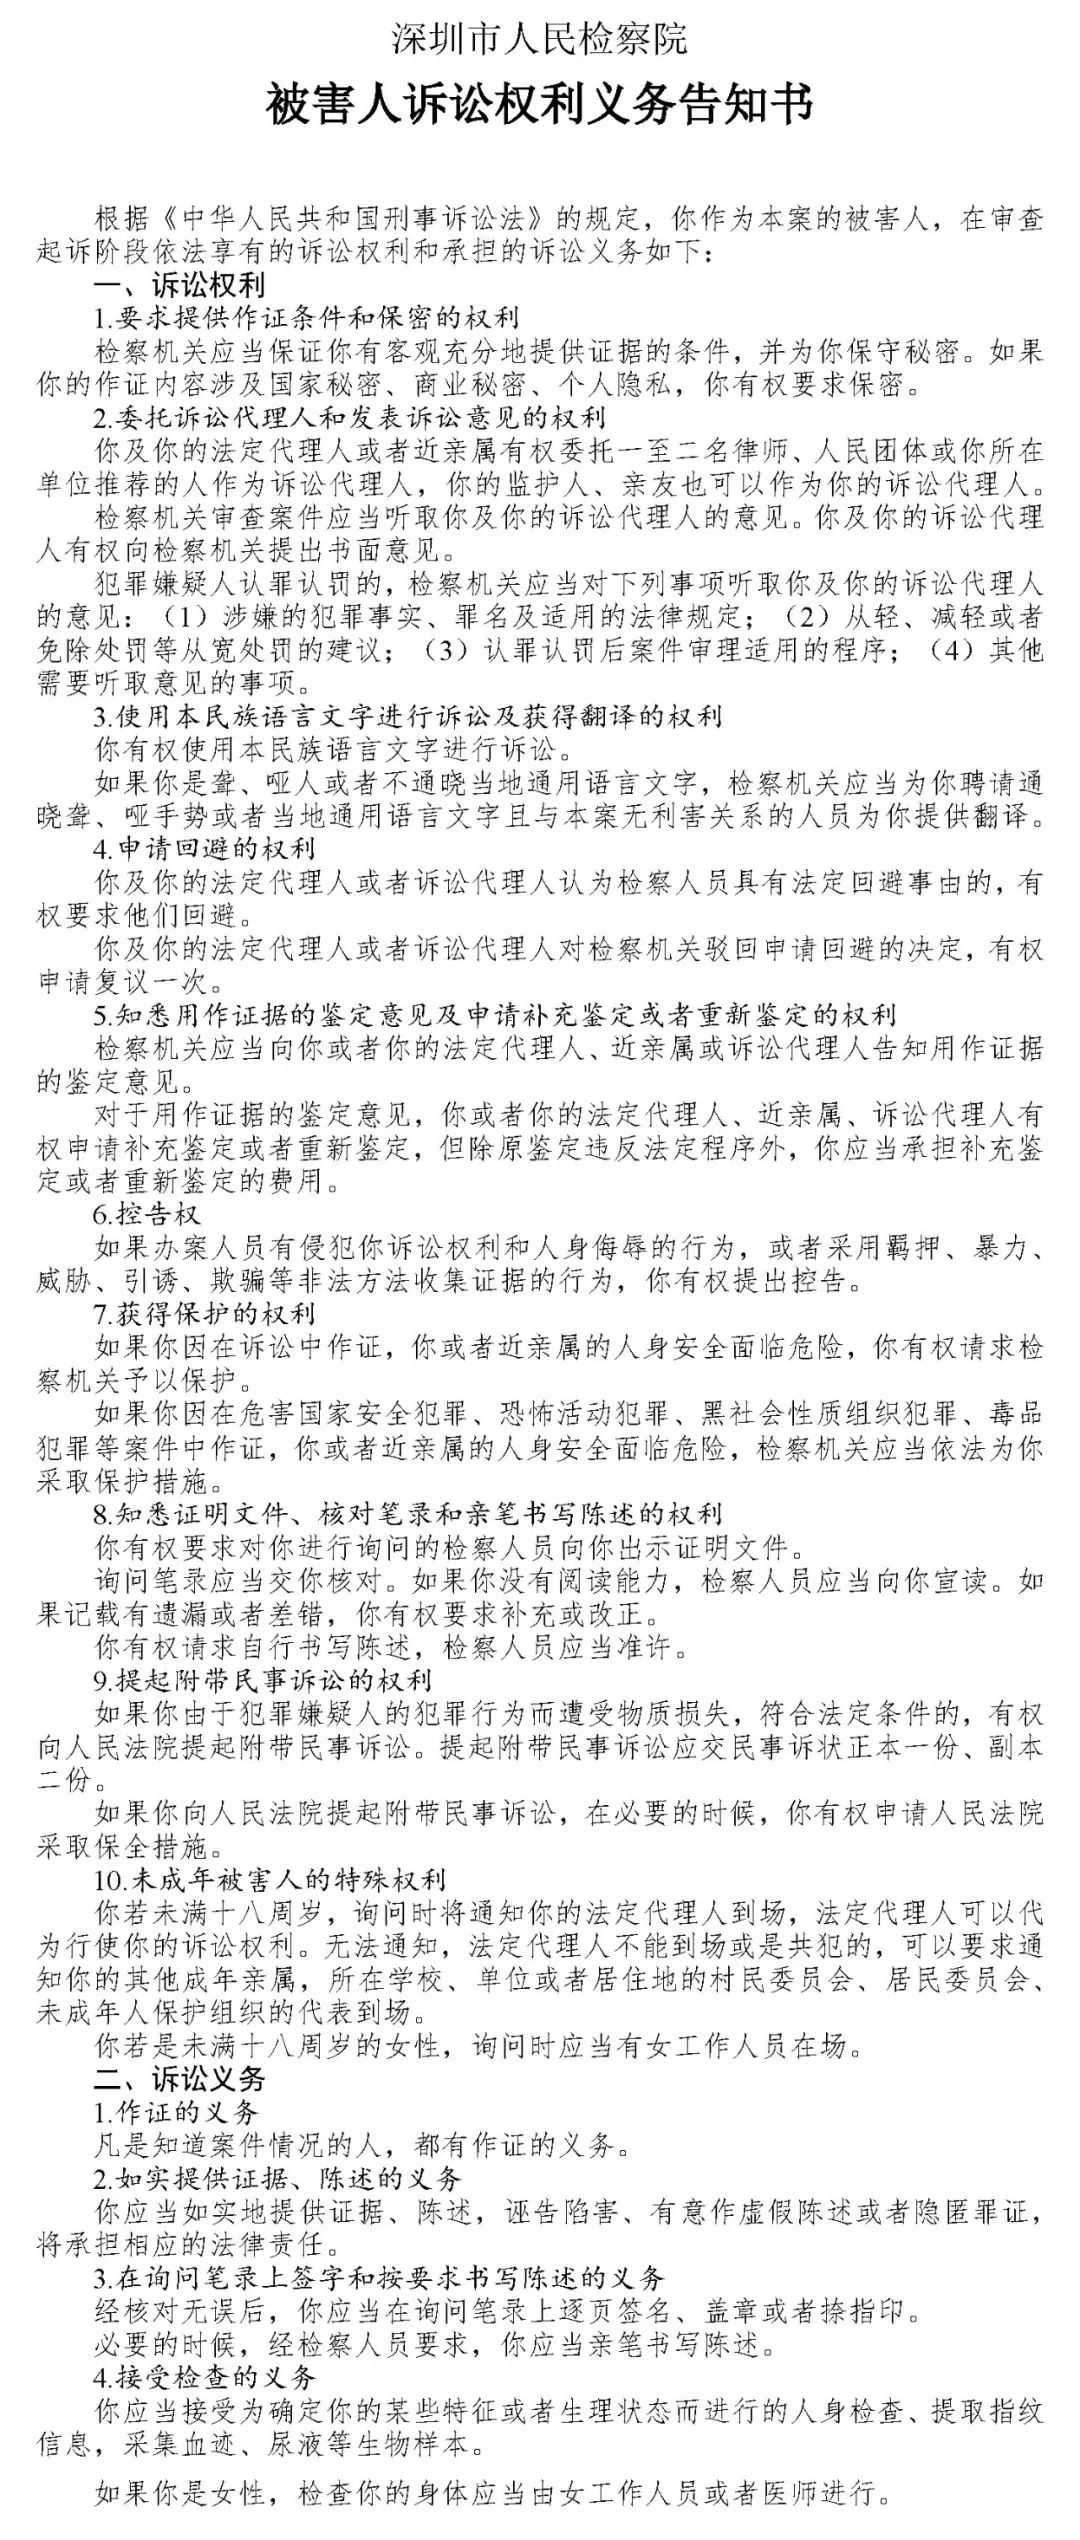 “网贷教父”周世平被移送审查起诉 红岭创投非法集资1395亿